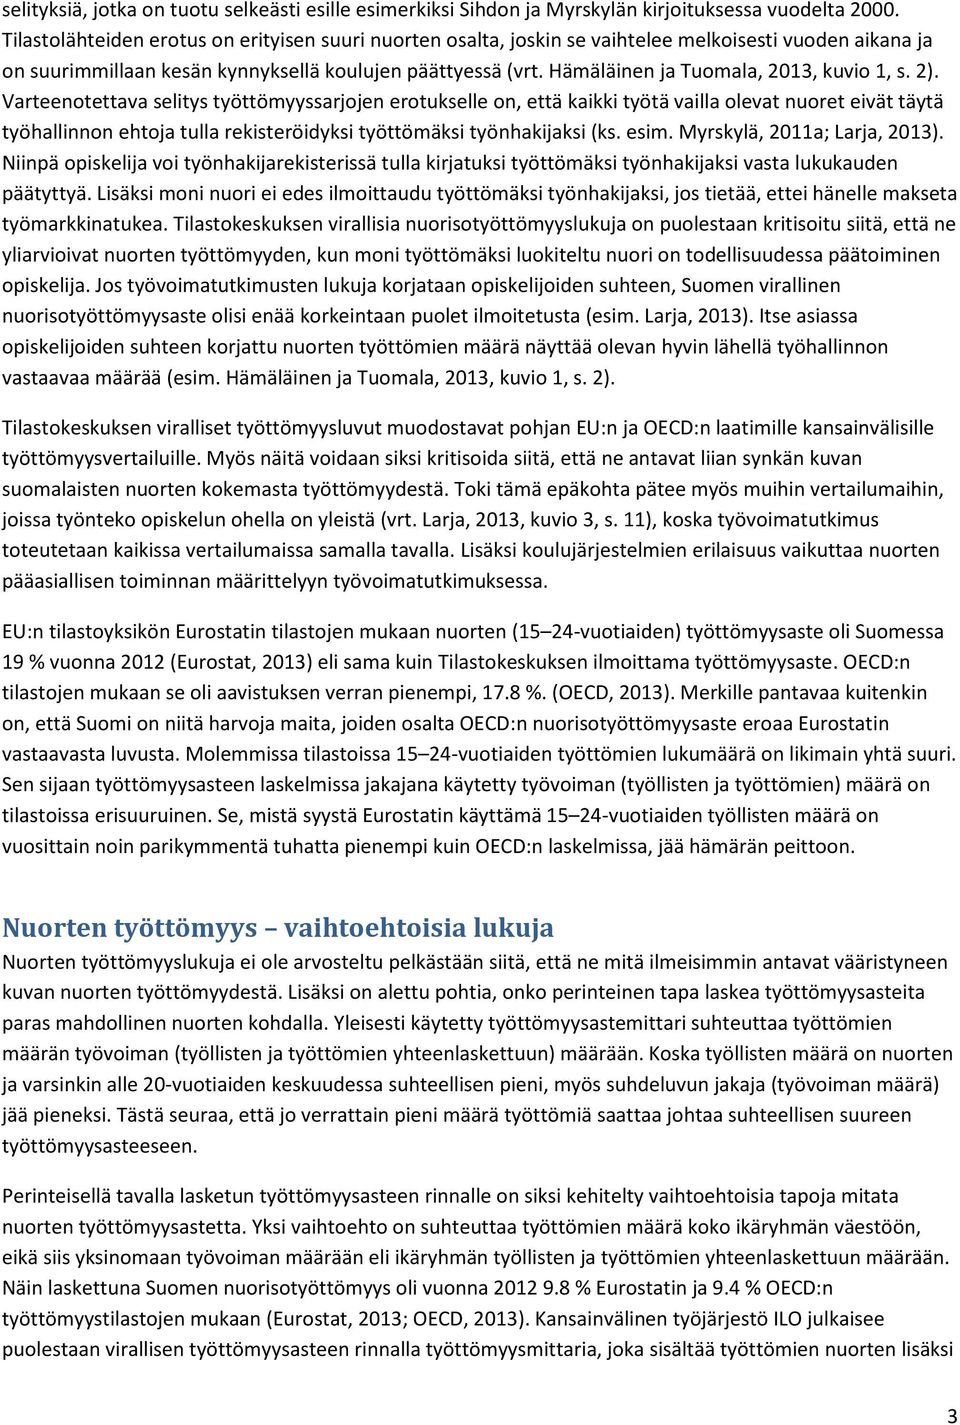 Hämäläinen ja Tuomala, 2013, kuvio 1, s. 2).